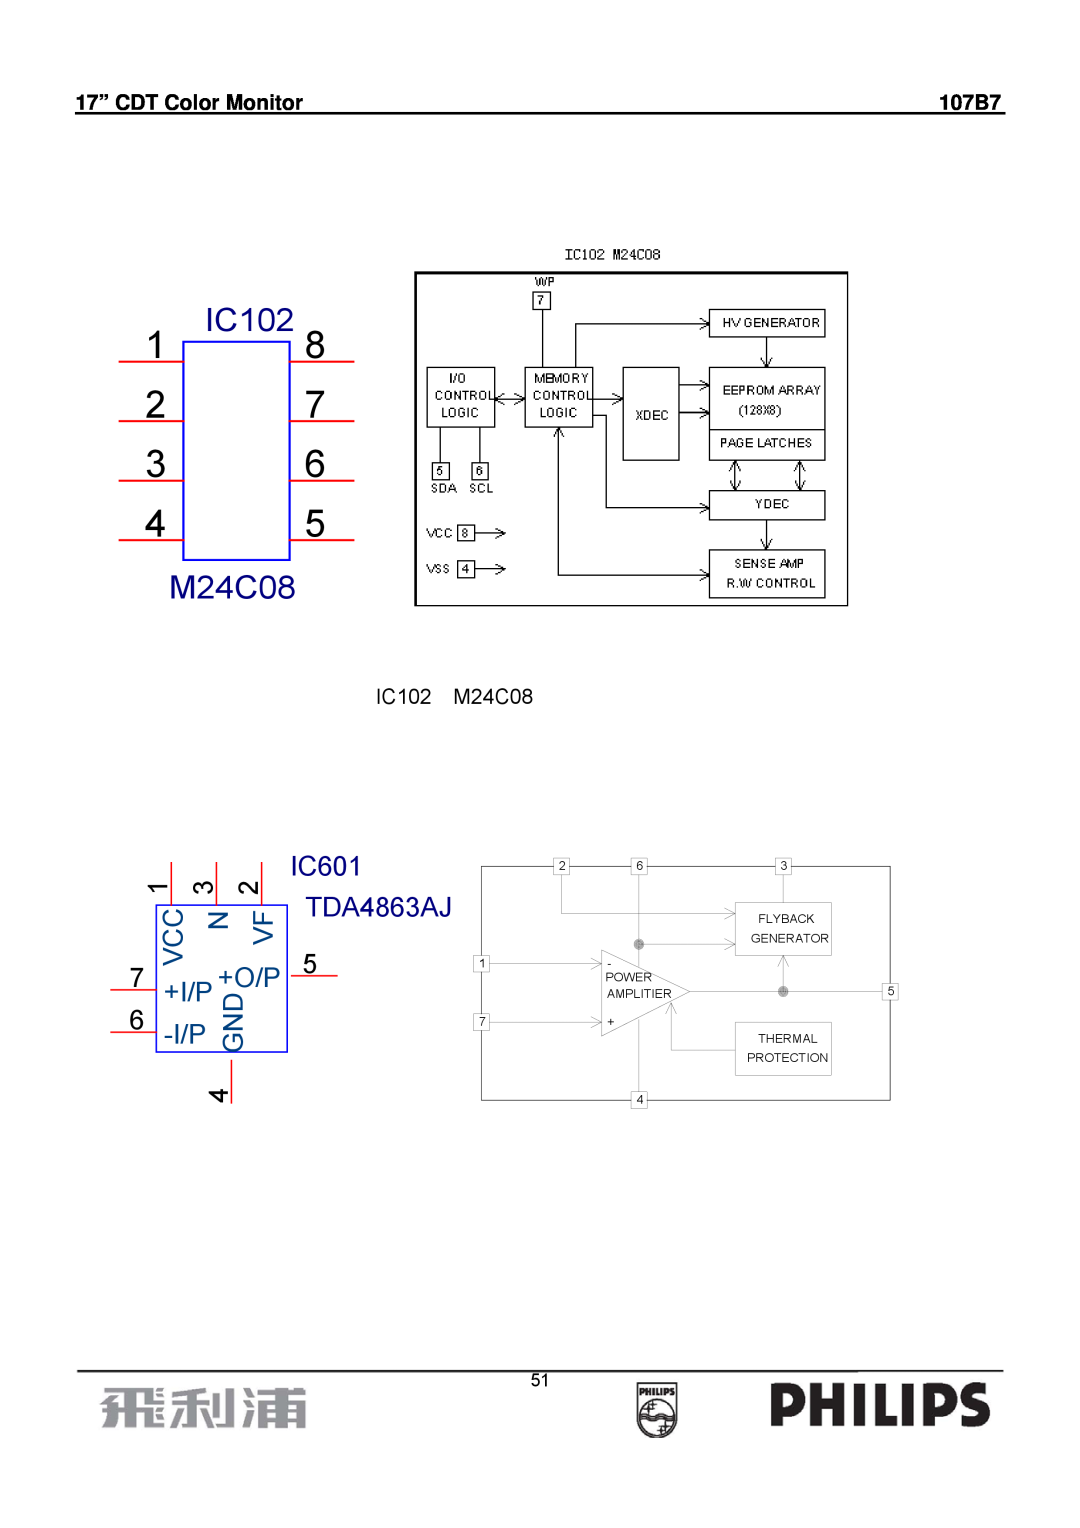 Philips 107B7 manual IC102 M24C08, 1 IC102, Vcc N Vf, +I/P, +O/P, IC601 TDA4863AJ, 17” CDT Color Monitor 